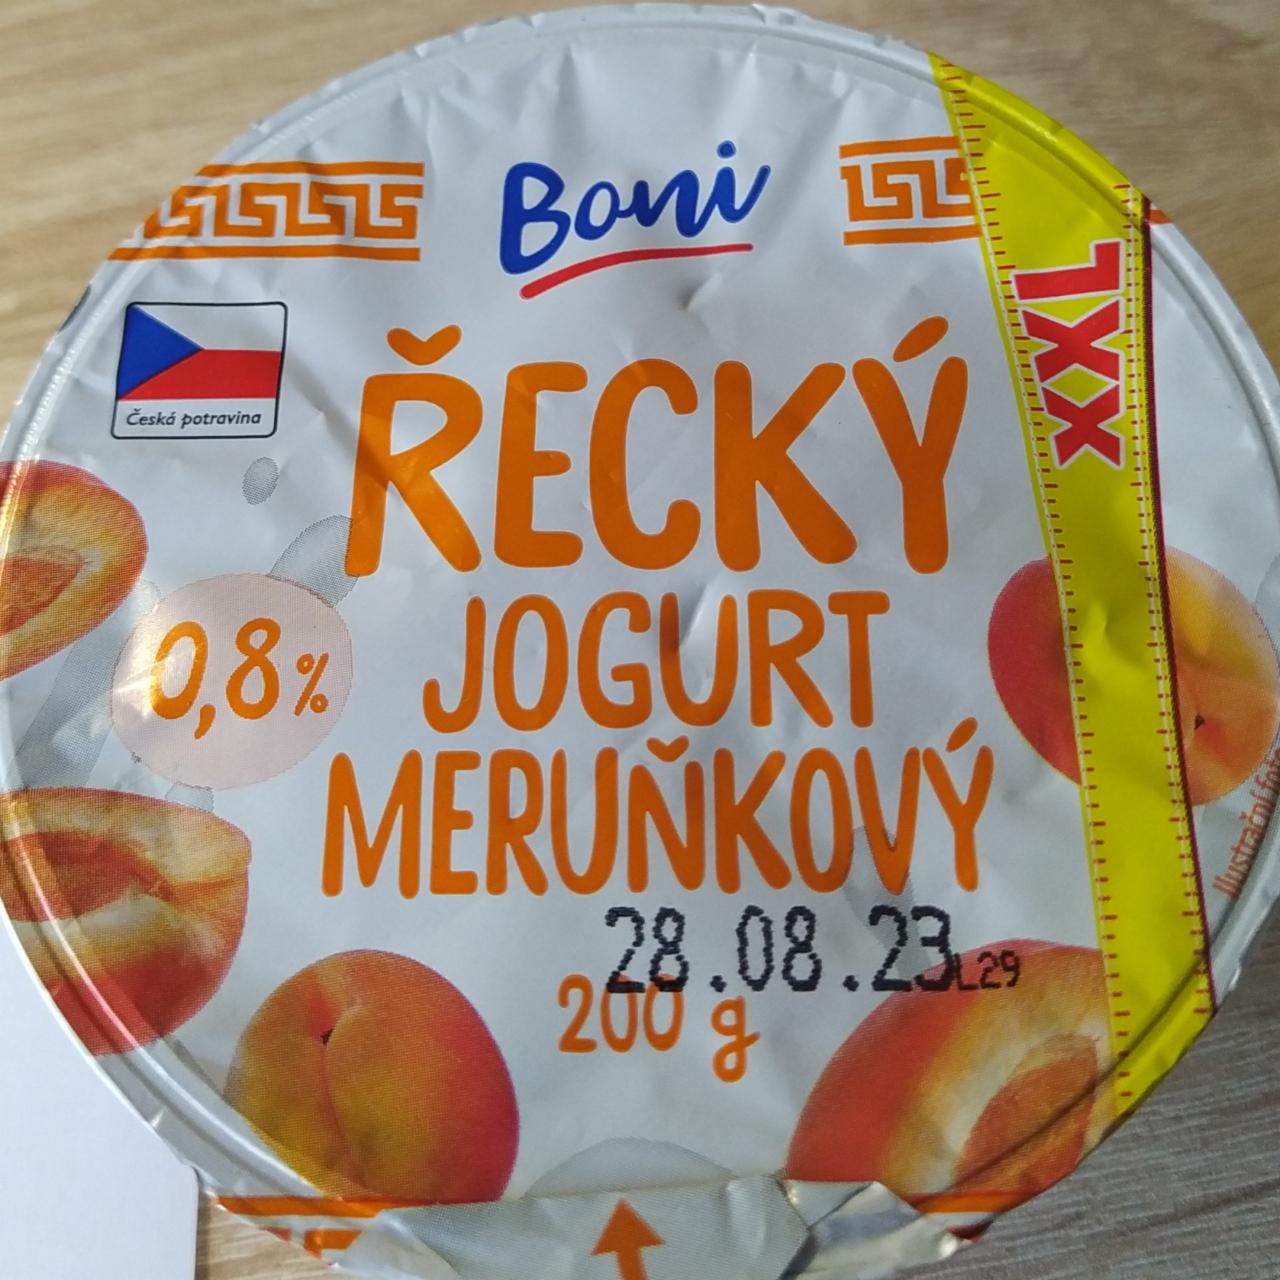 Fotografie - Řecký jogurt meruňkový 0,8% Boni